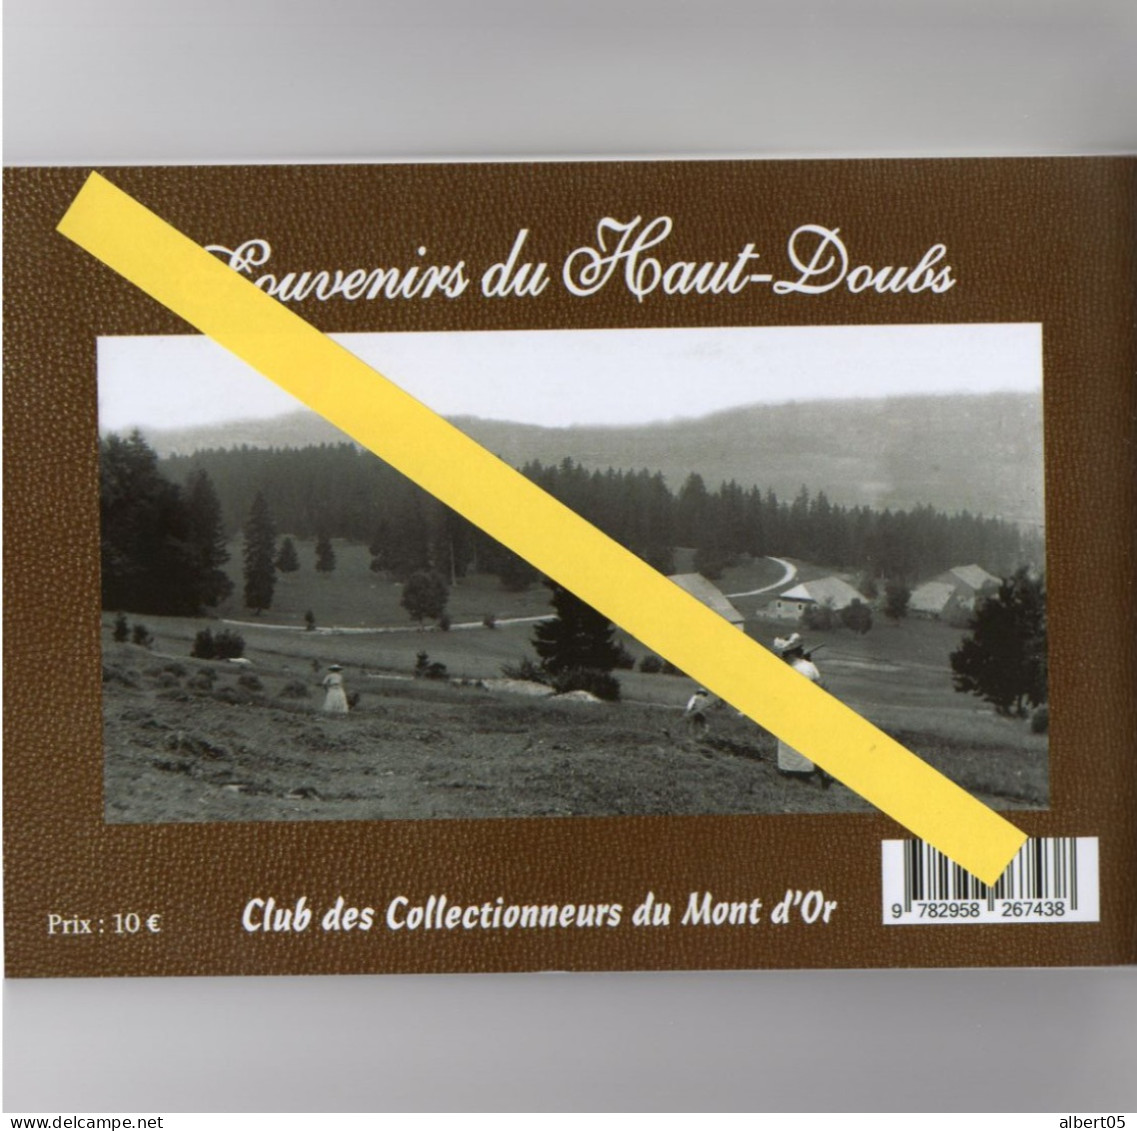 Souvenirs du Haut-Doubs  -  Mouthe - Le Tacot - Chaux-Neuve - Chatelblanc - Rochejean - Armaillis Clichés Henri Cordier